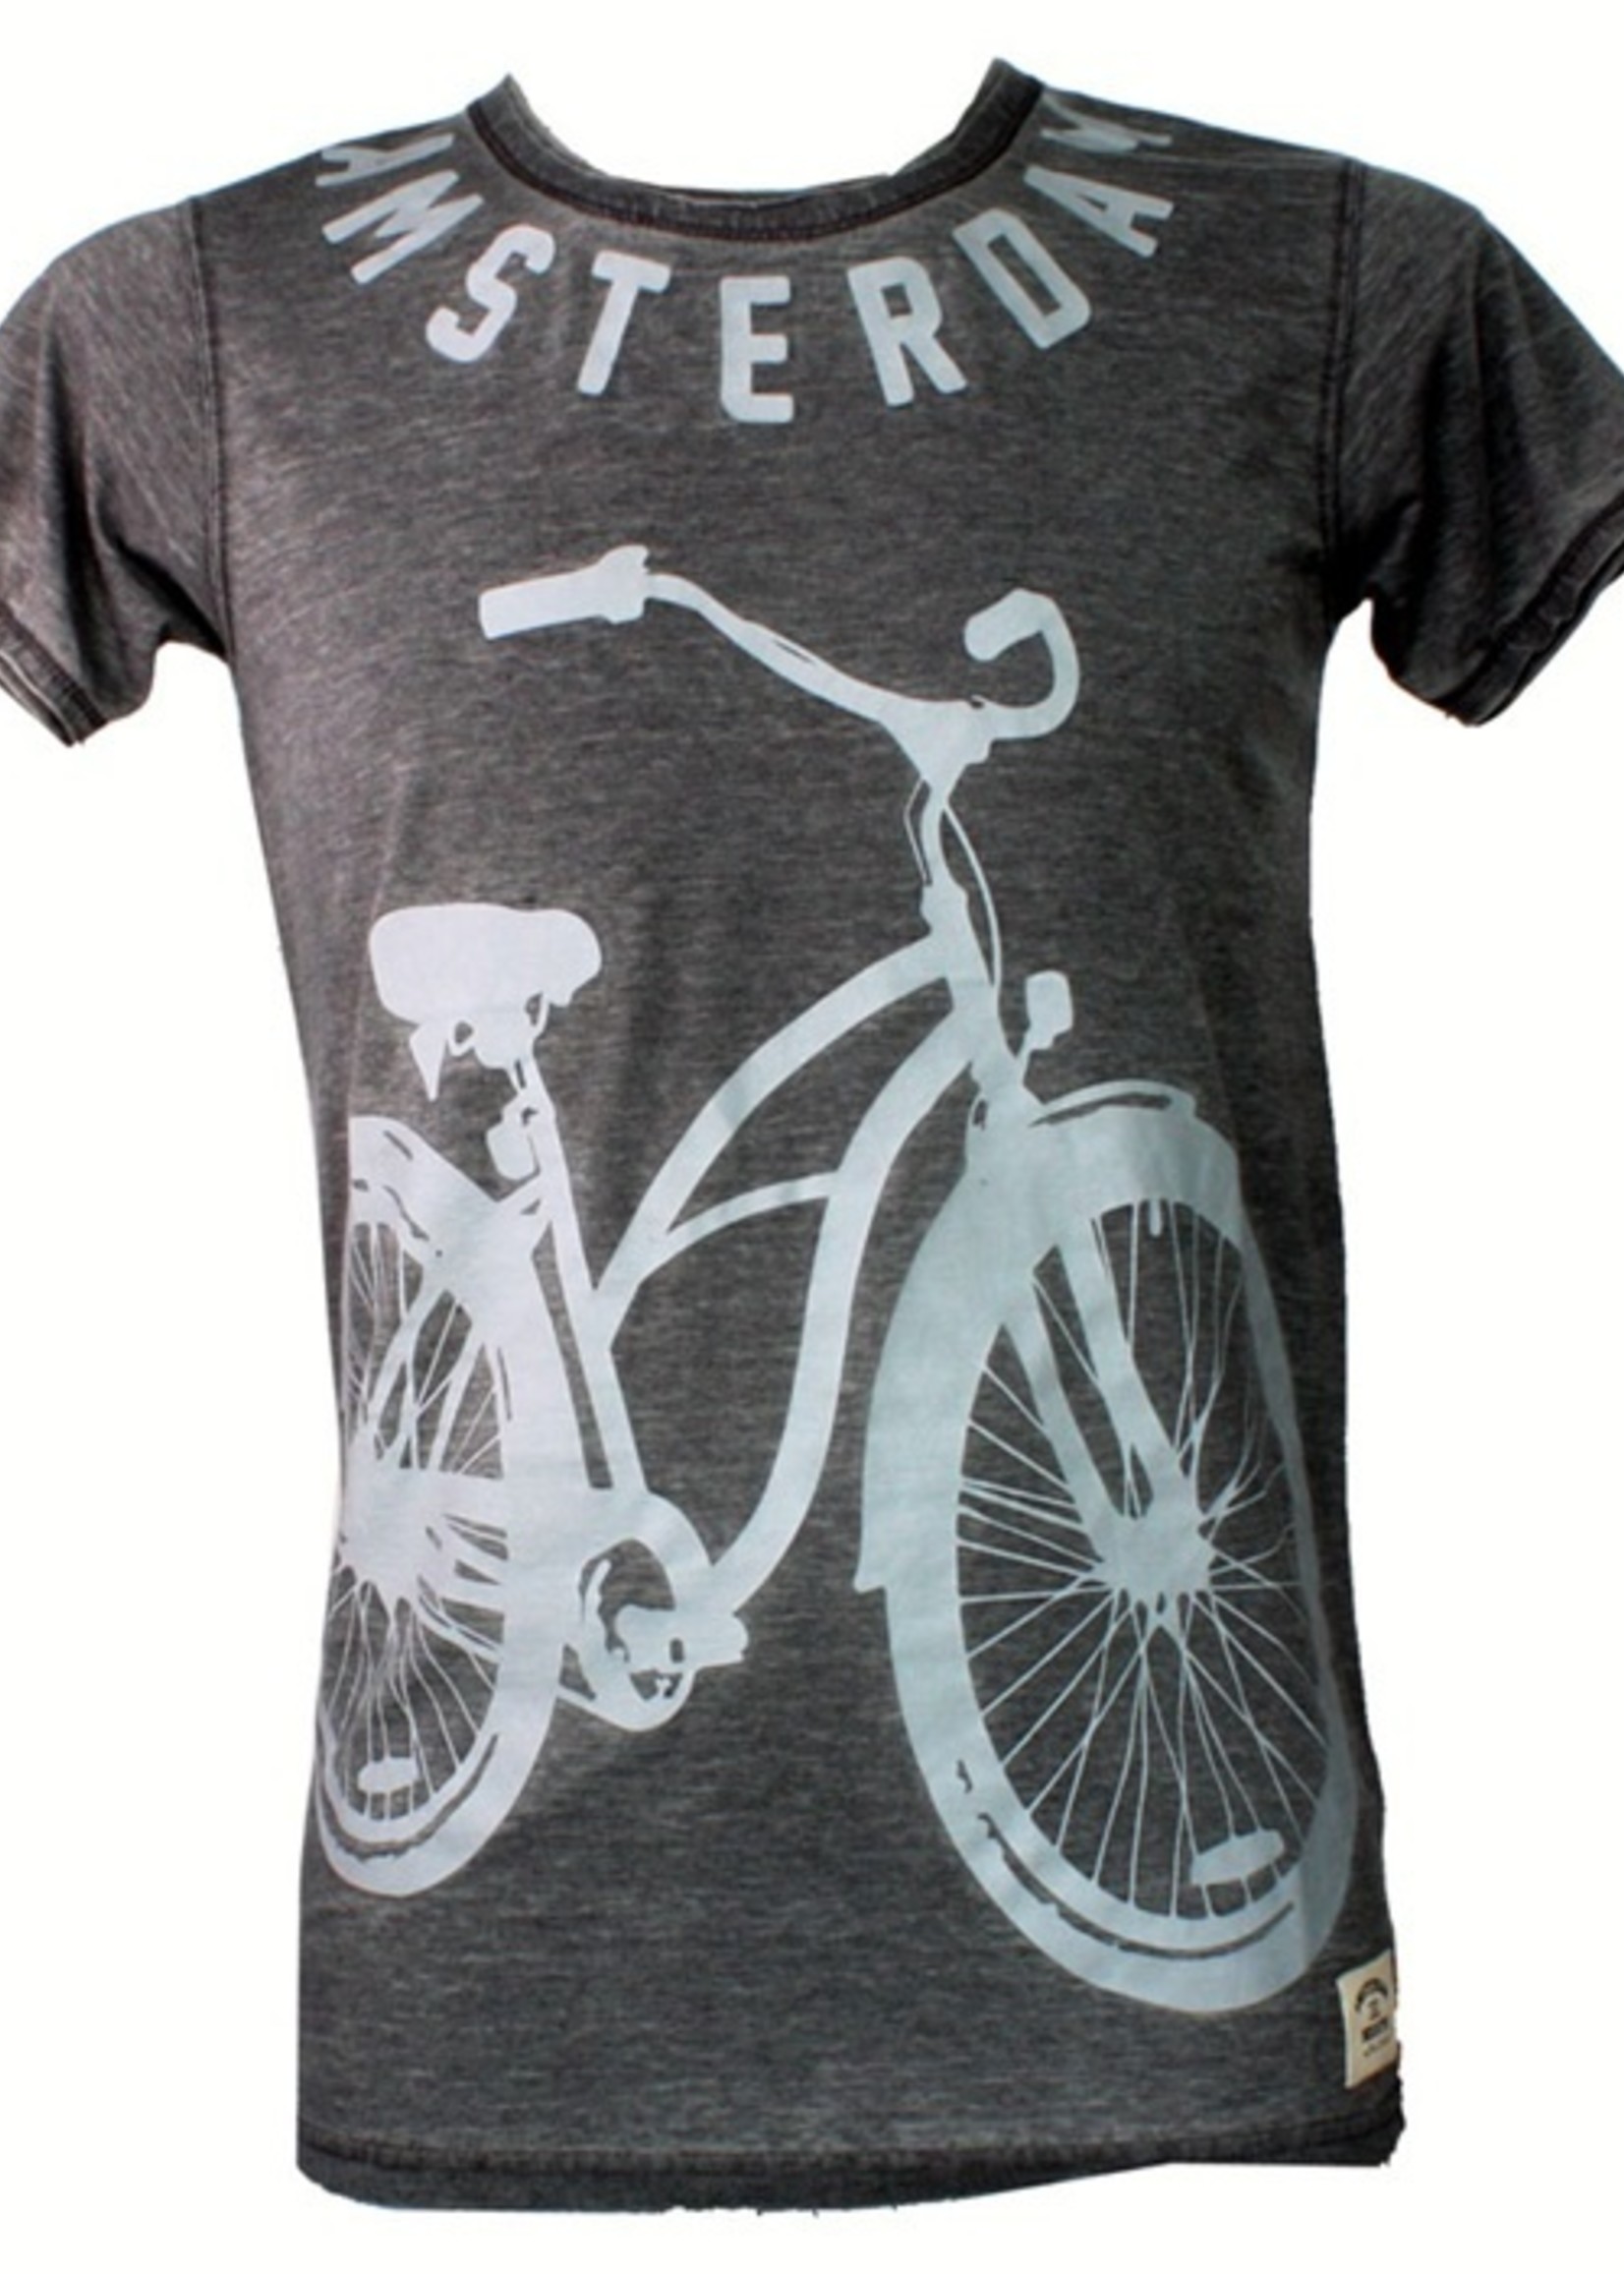 T-shirt cruiser bike anthracite